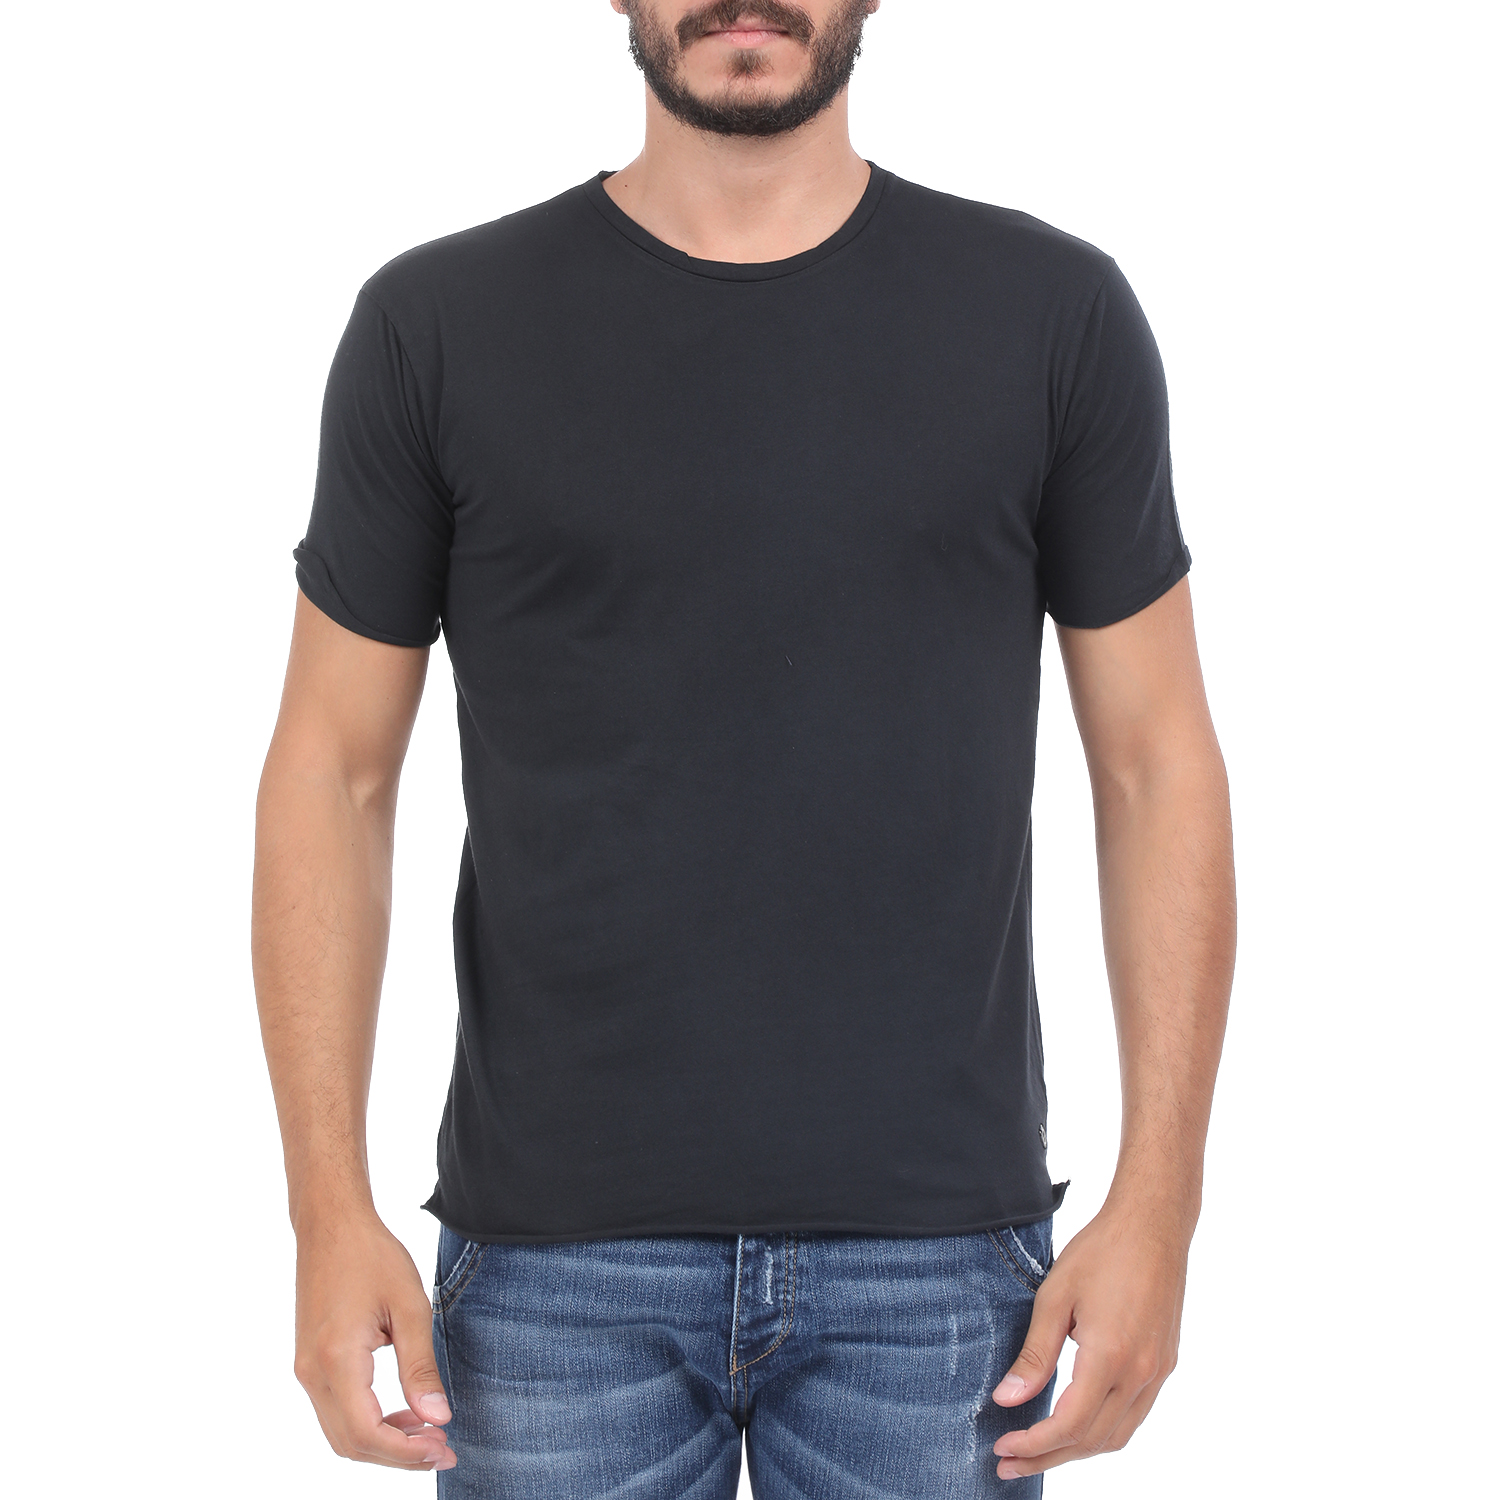 Ανδρικά/Ρούχα/Μπλούζες/Κοντομάνικες GREENWOOD - Ανδρική μπλούζα GREENWOOD μαύρη